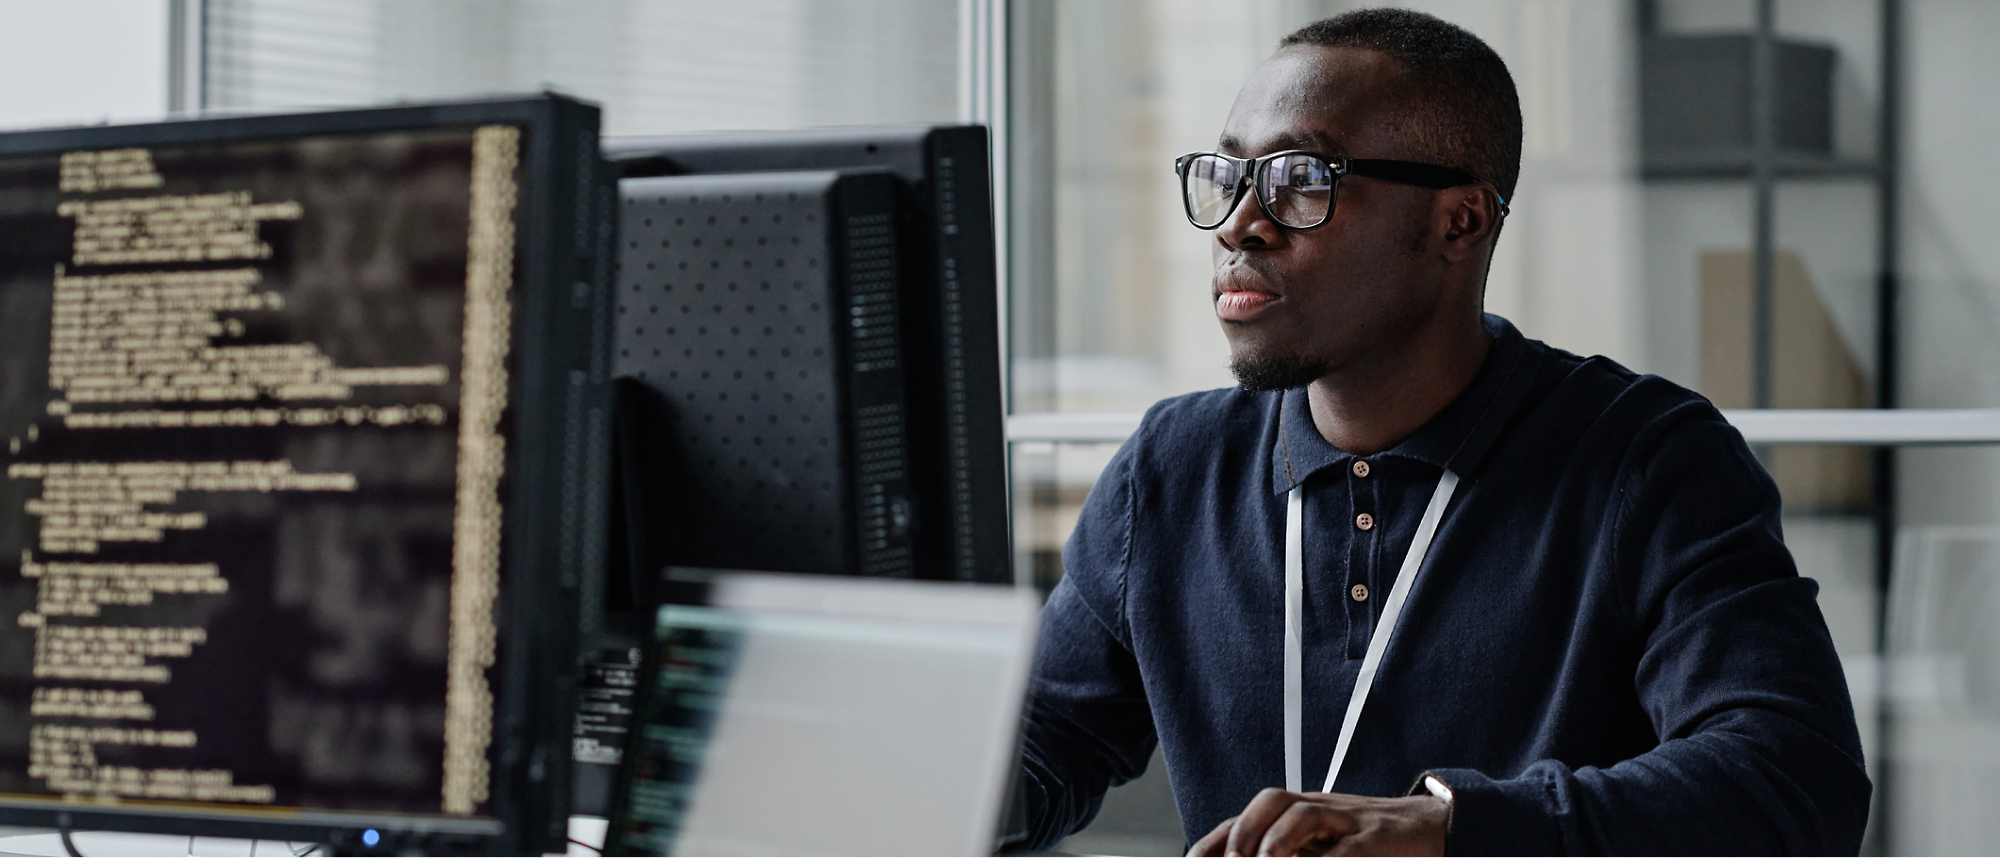 Un hombre con gafas y una camiseta oscura trabaja en un ordenador con líneas de código en la pantalla en una oficina.